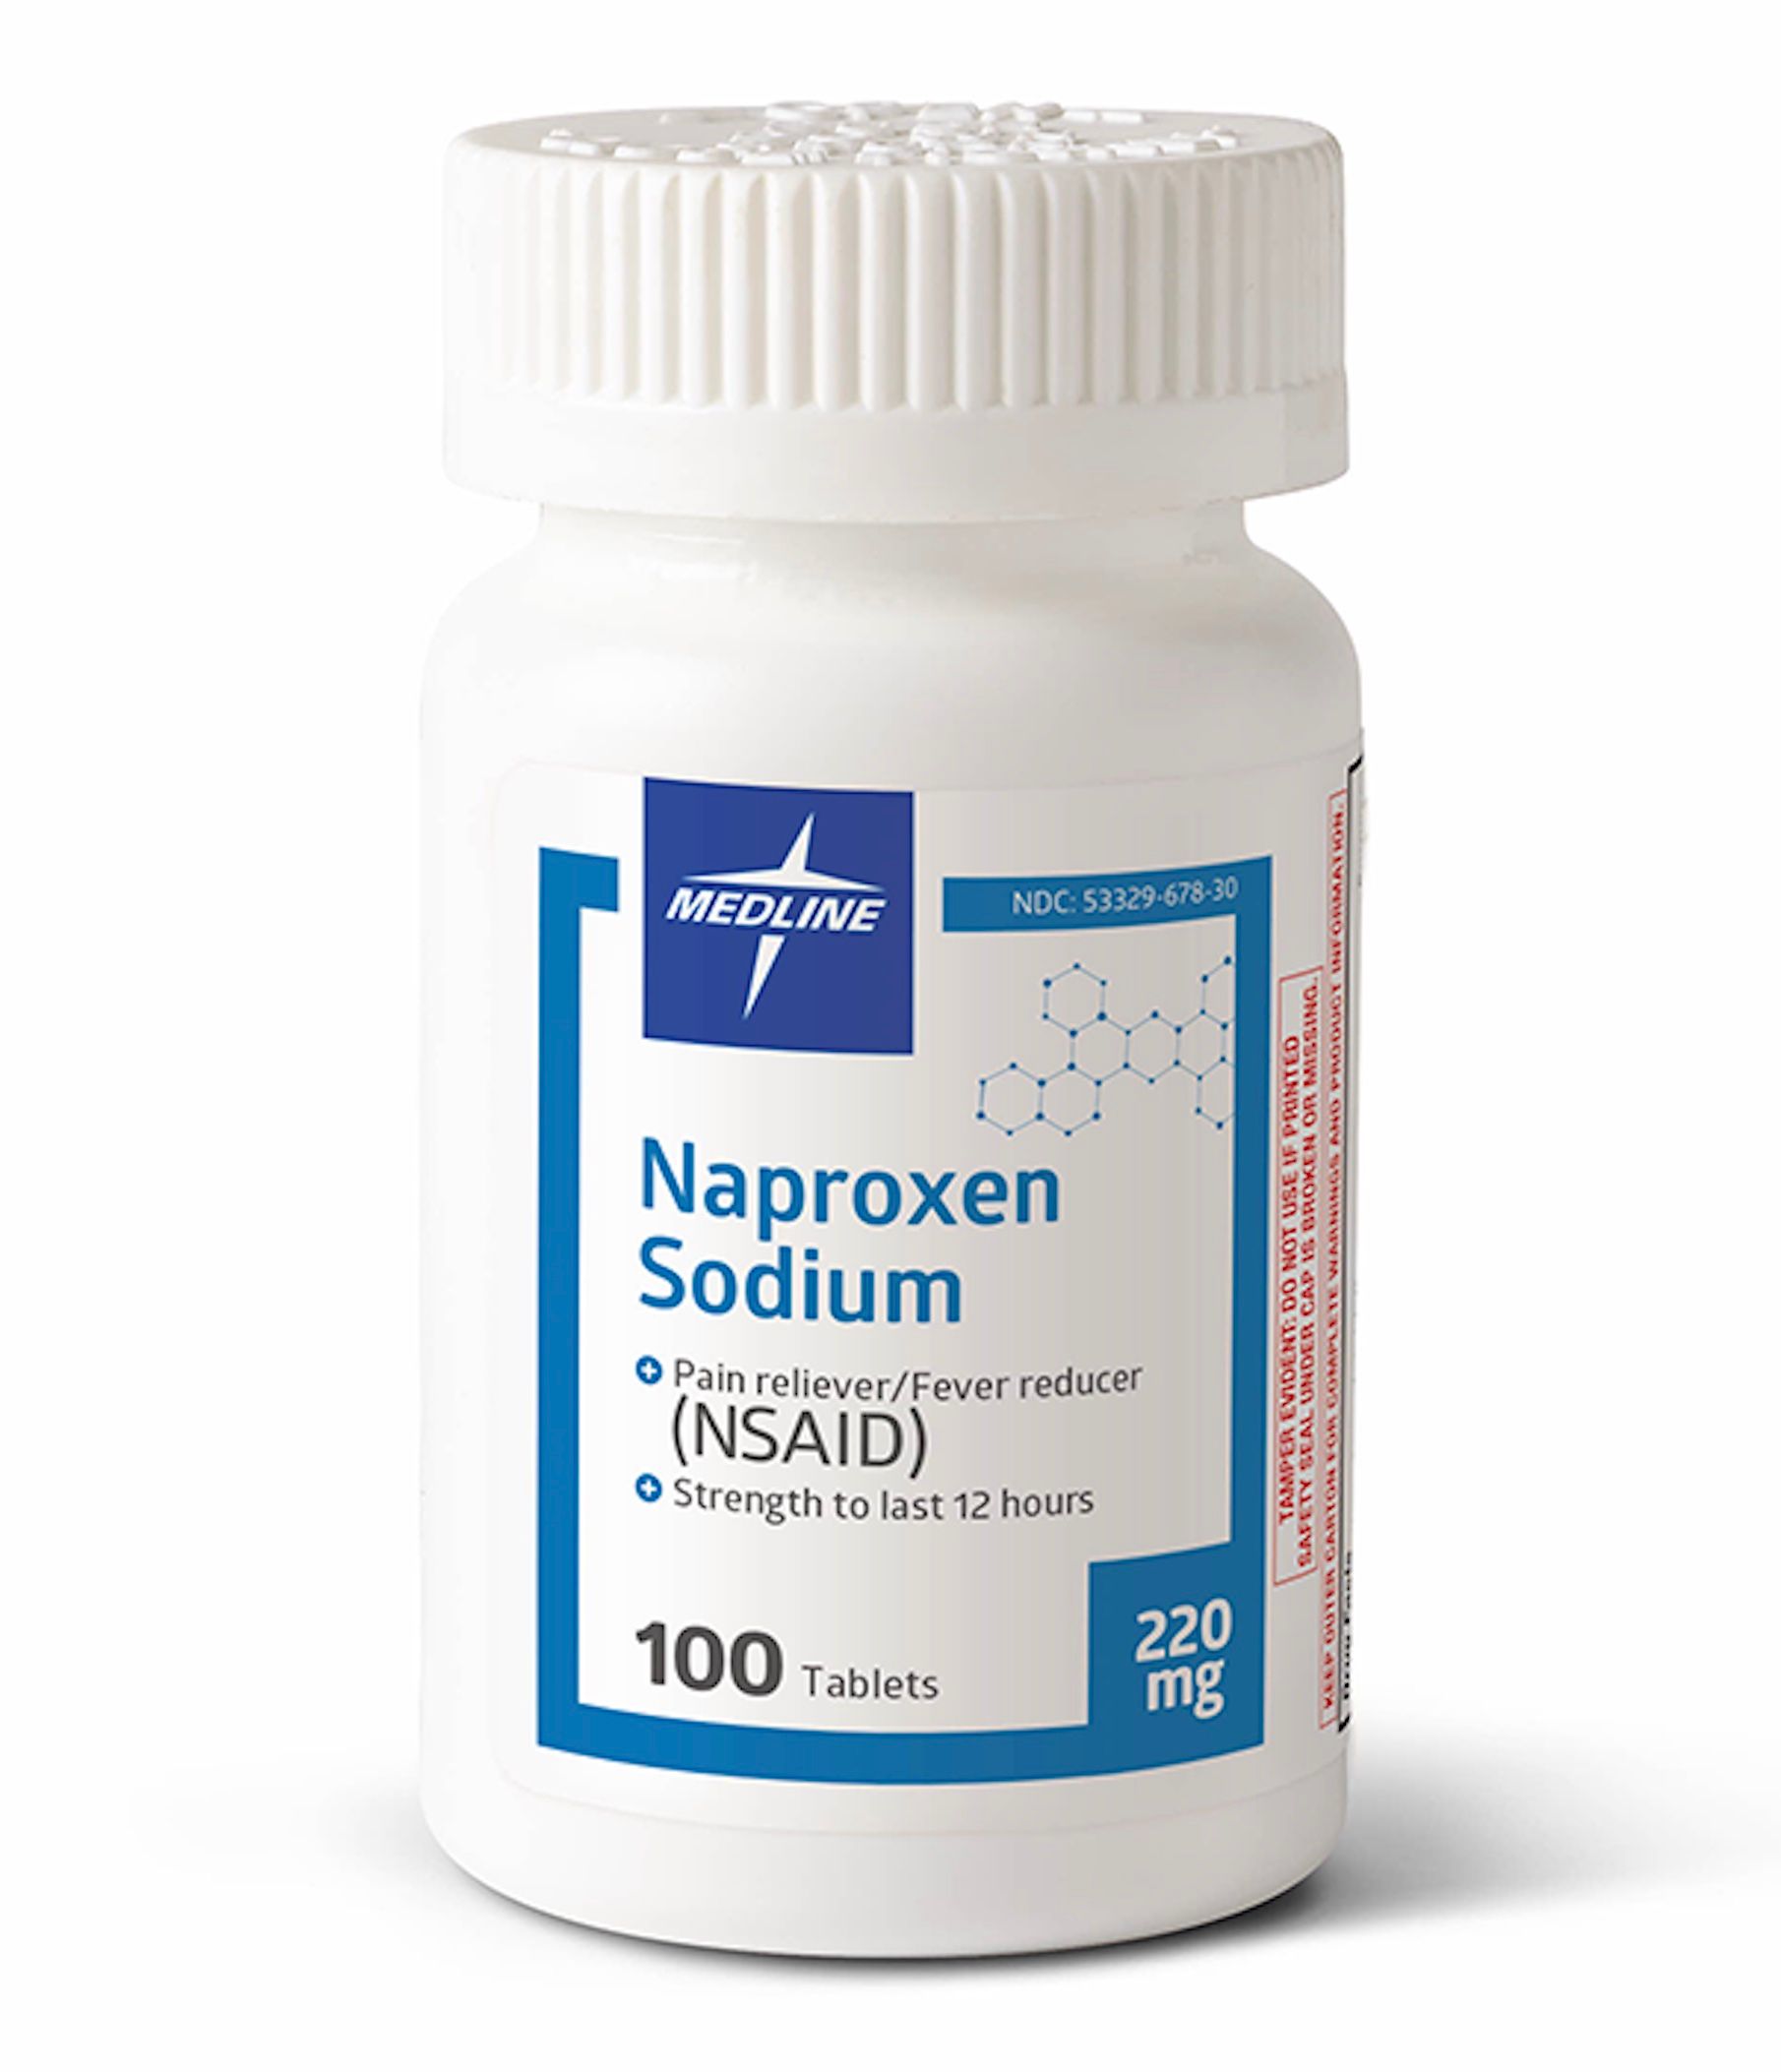 DISCMedline Naproxen Sodium Tablets, 220 mg - 100 ct